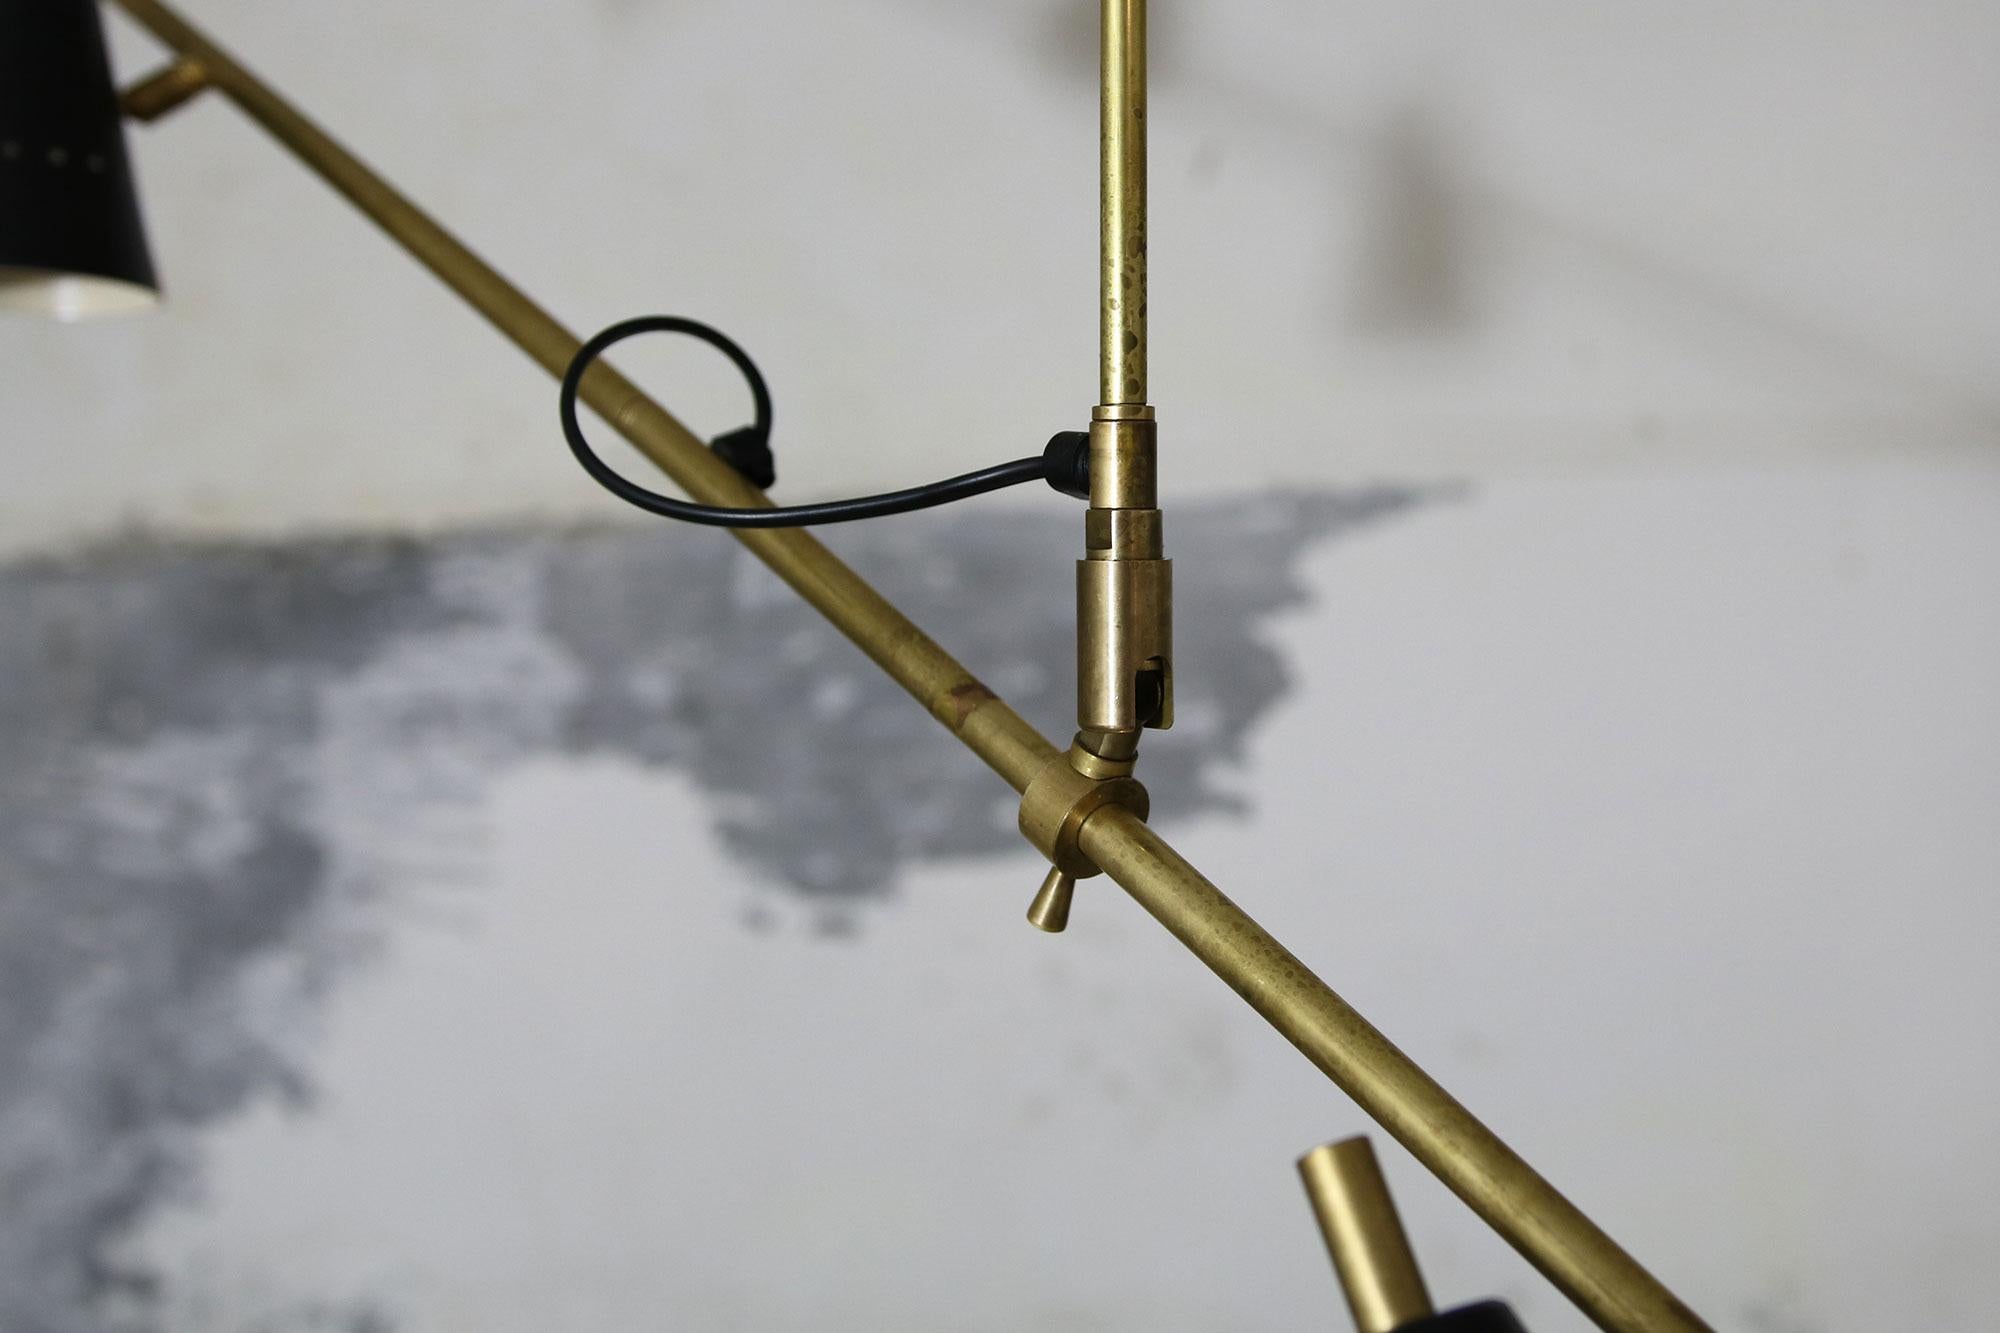 Metal Long & Adjustable Italian Modern Ceiling Lamp, Stilnovo Style Chandelier Pendant